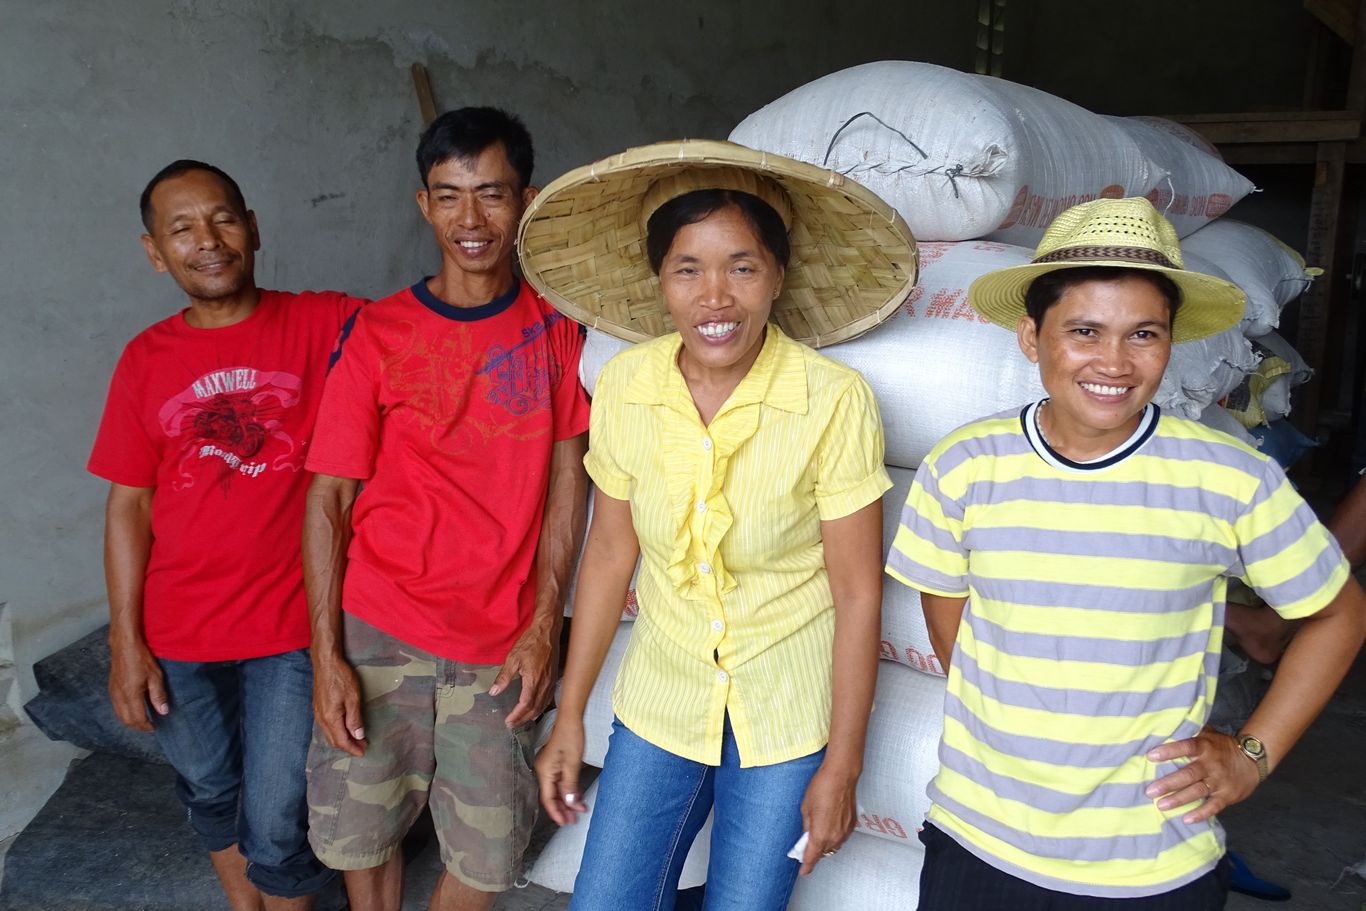 Gruppe von Bauern und Bäuerinnen vor Reissäcken